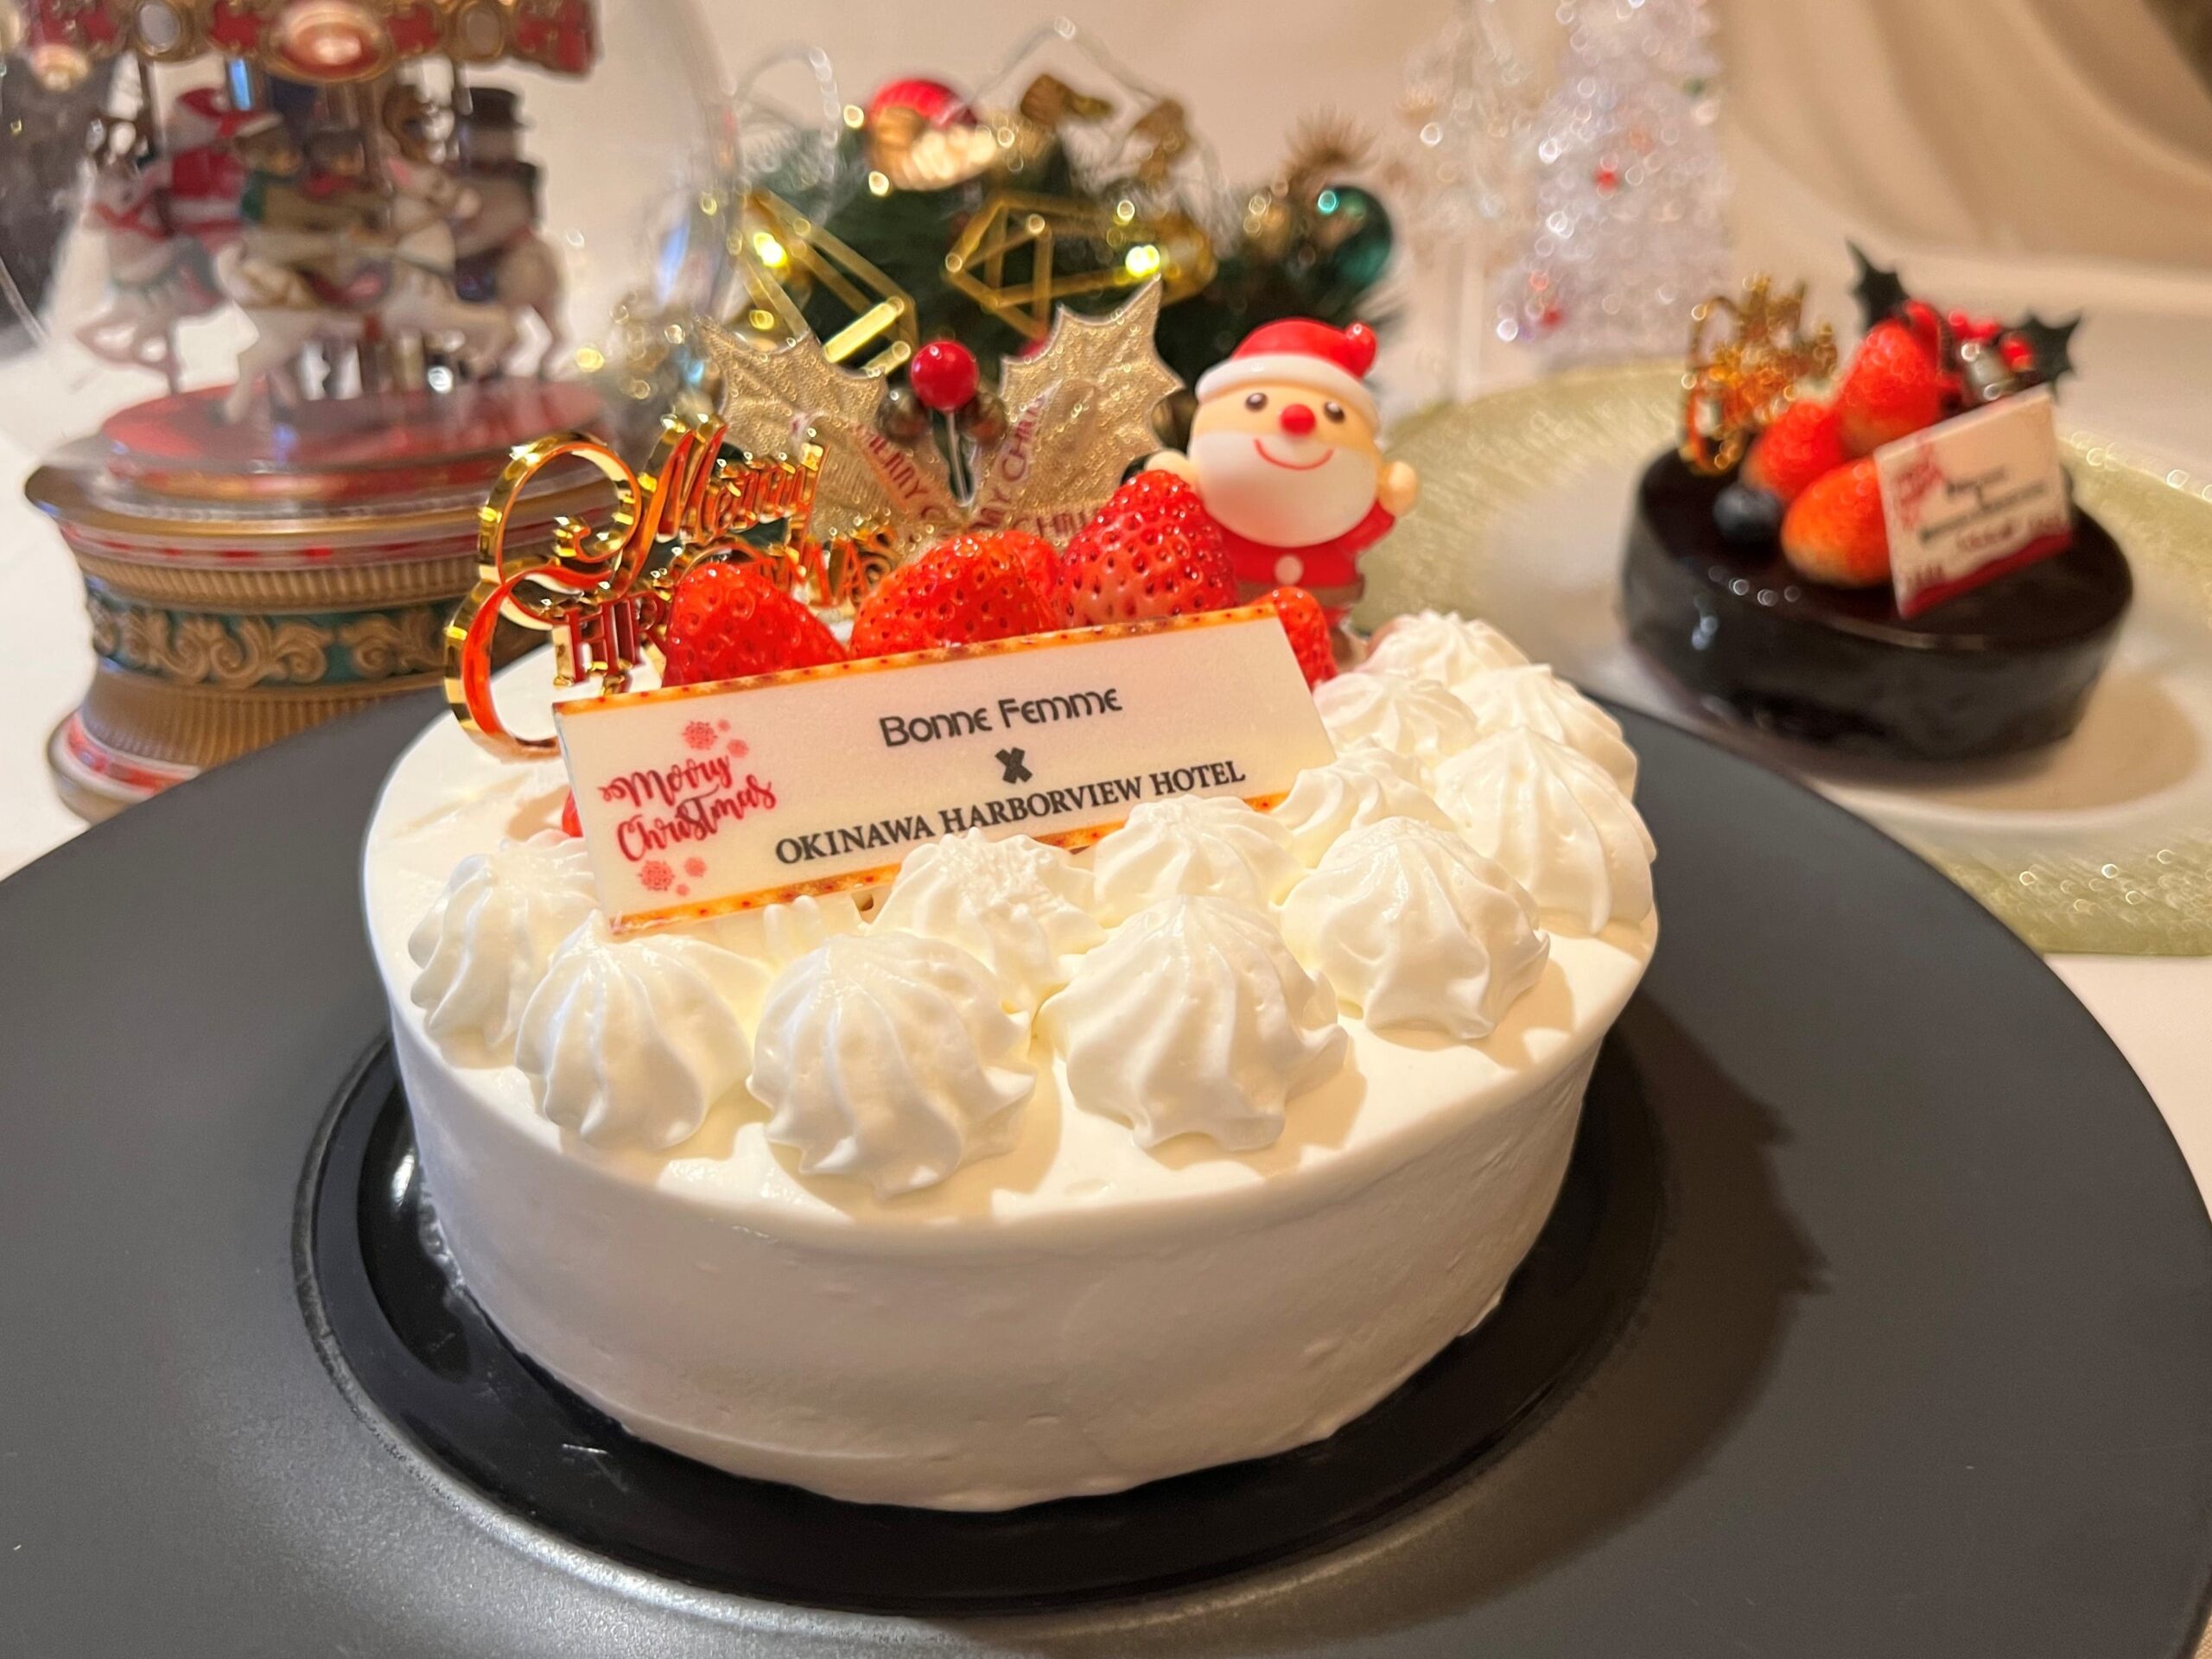 祝福你<br/>来自冲绳海景酒店<br/>抢眼的圣诞蛋糕和烤鸡图片。